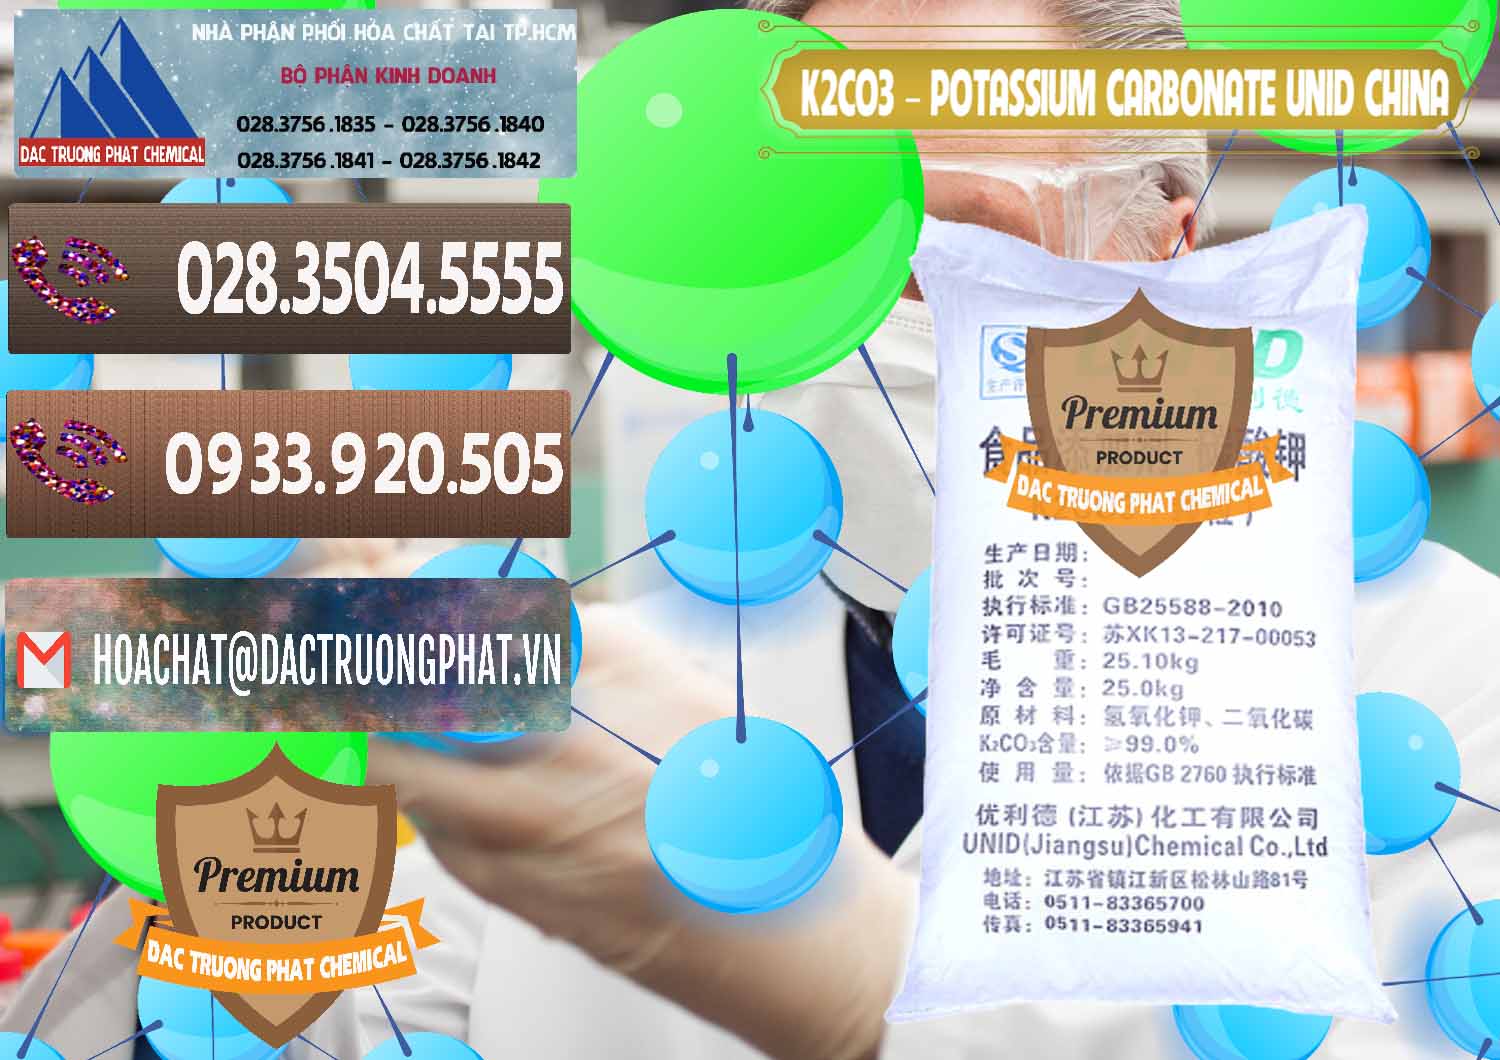 Công ty phân phối & bán K2Co3 – Potassium Carbonate UNID Trung Quốc China - 0475 - Nơi chuyên phân phối ( bán ) hóa chất tại TP.HCM - hoachatviet.net